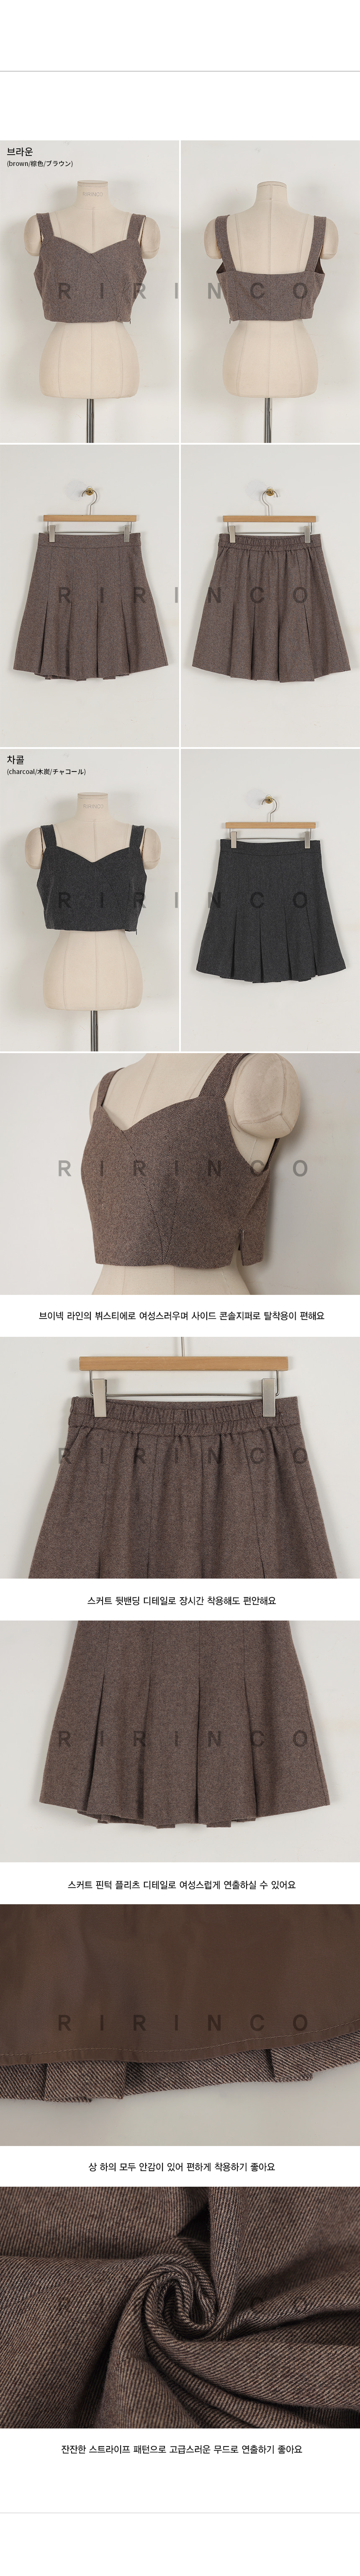 RIRINCO (ウール50%)ビスチェトップス&プリーツミニスカート 上下セット